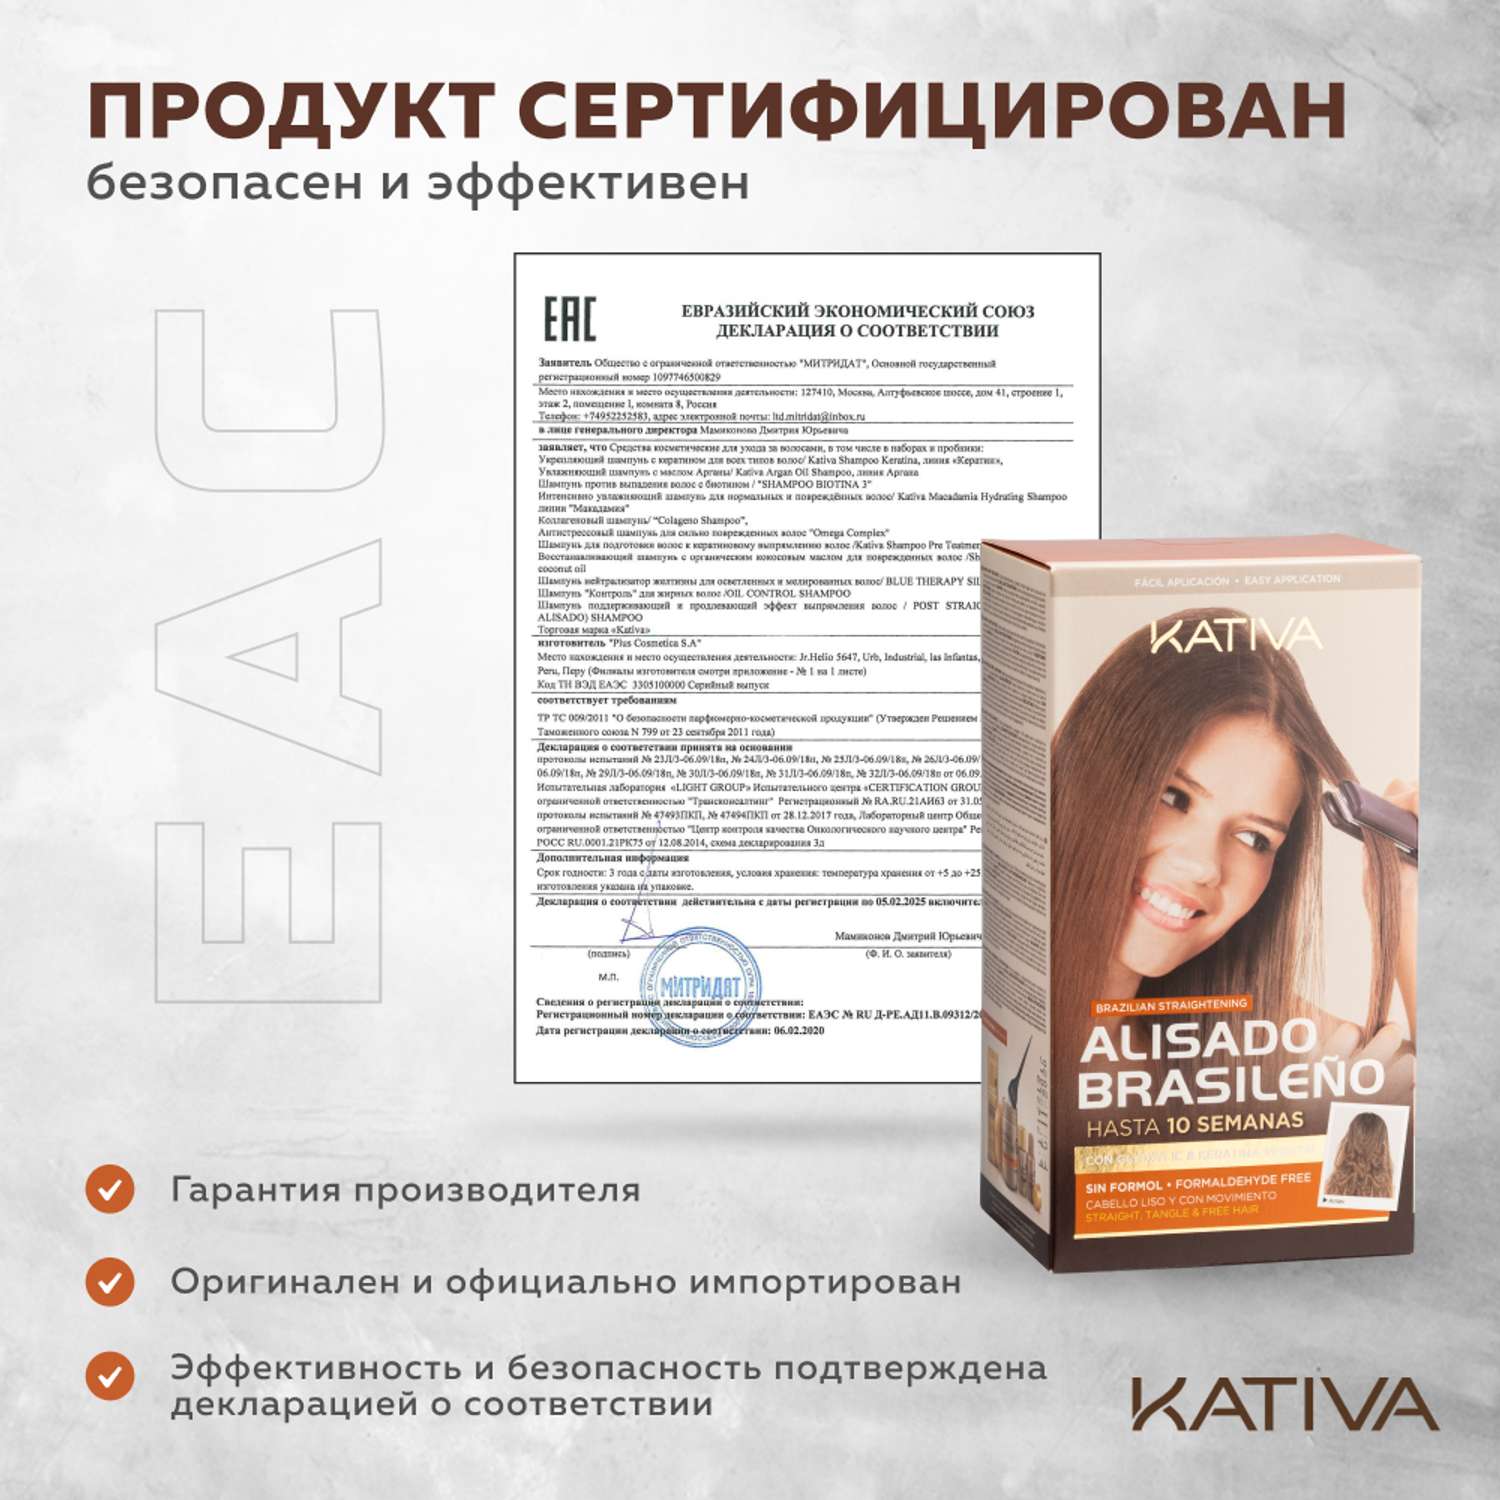 Набор для выпрямления Kativa кератинового и восстановления волос с маслом Арганы - фото 6